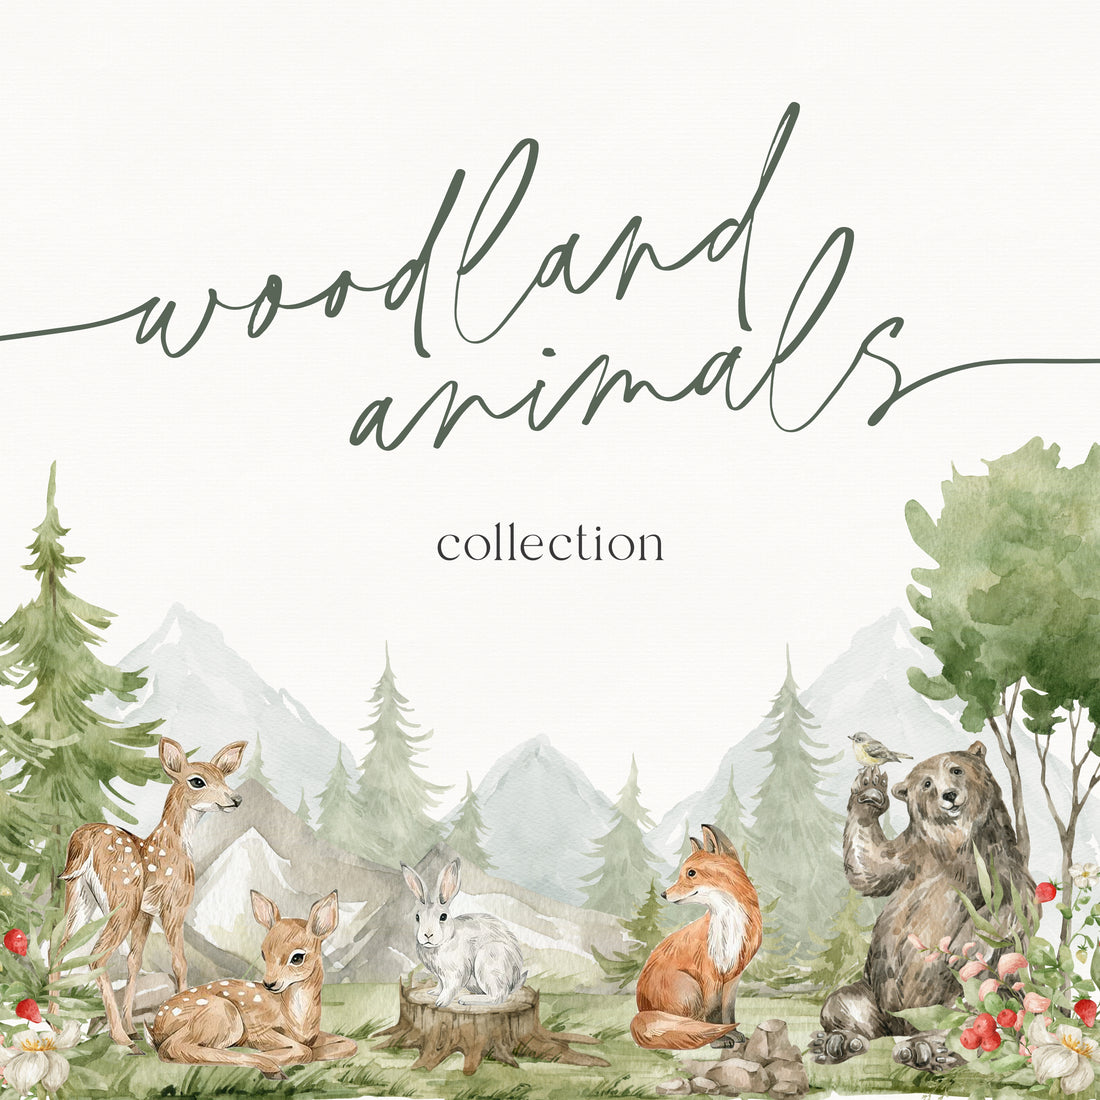  Woodland Animals